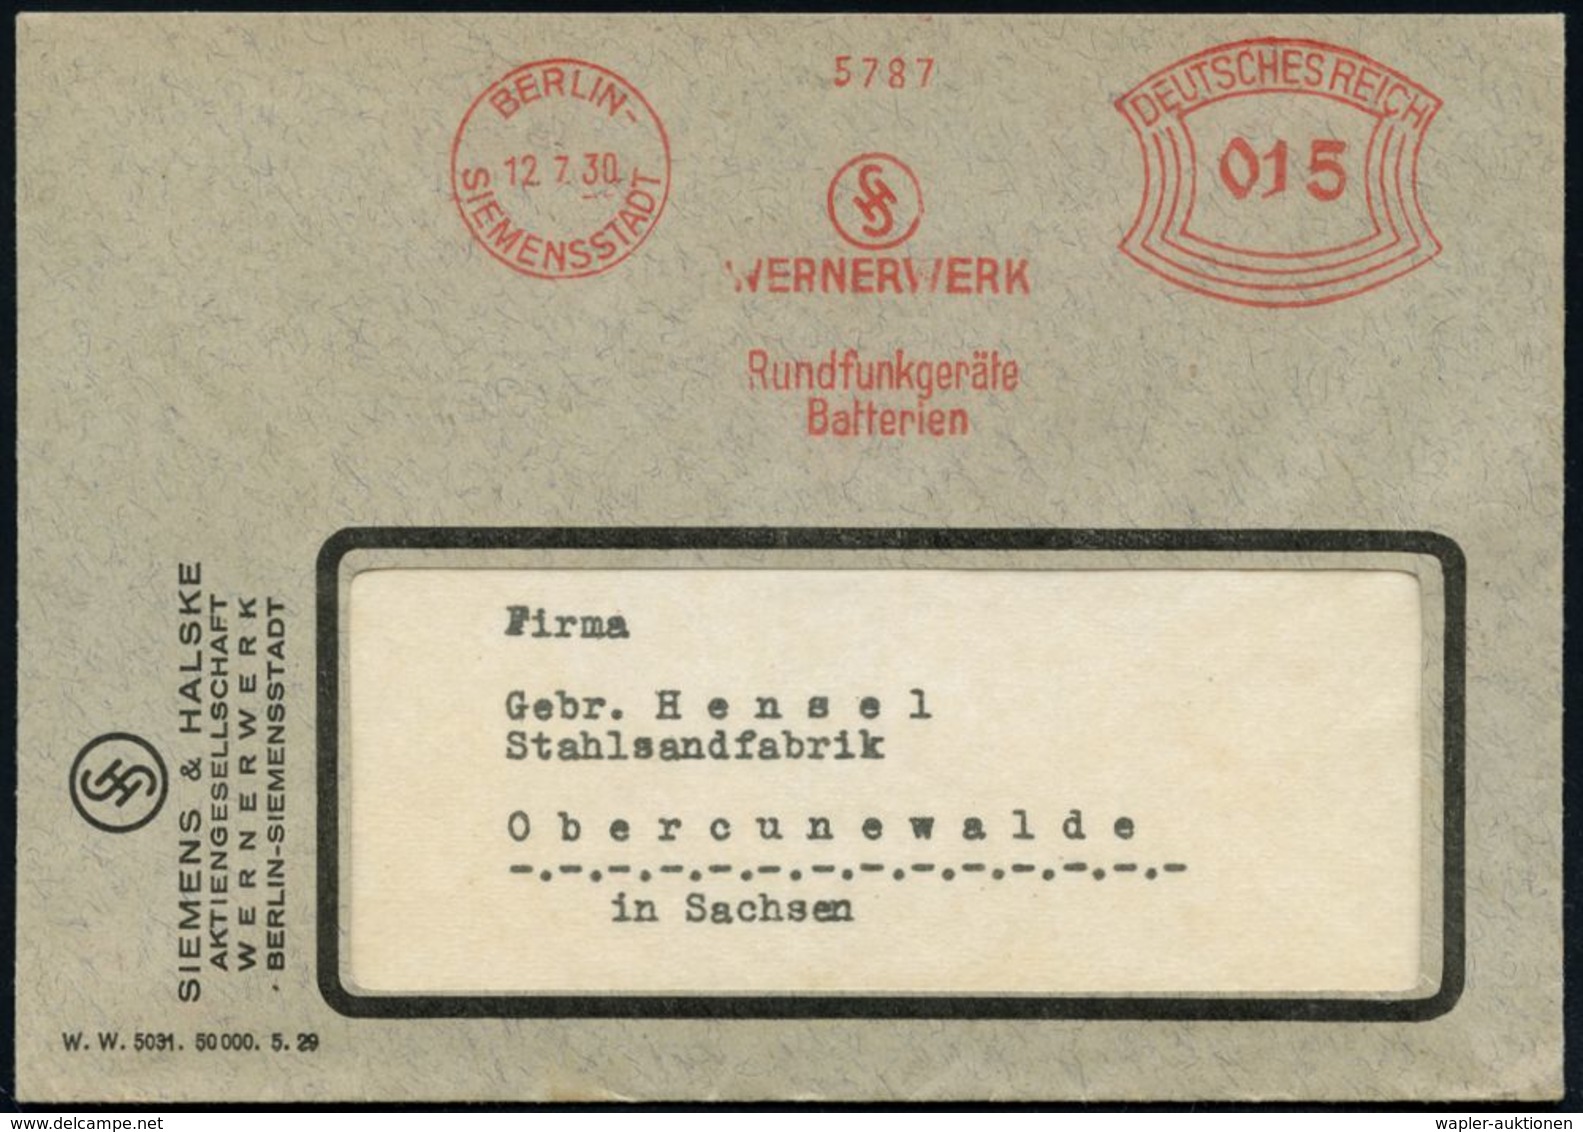 RADIO & RADIO-INDUSTRIE / APPARATE : BERLIN-/ SIEMENSSTADT/ WERNERWERK/ Rundfunkgeräte/ Batterien 1930 (12.7.) AFS (Mono - Ohne Zuordnung